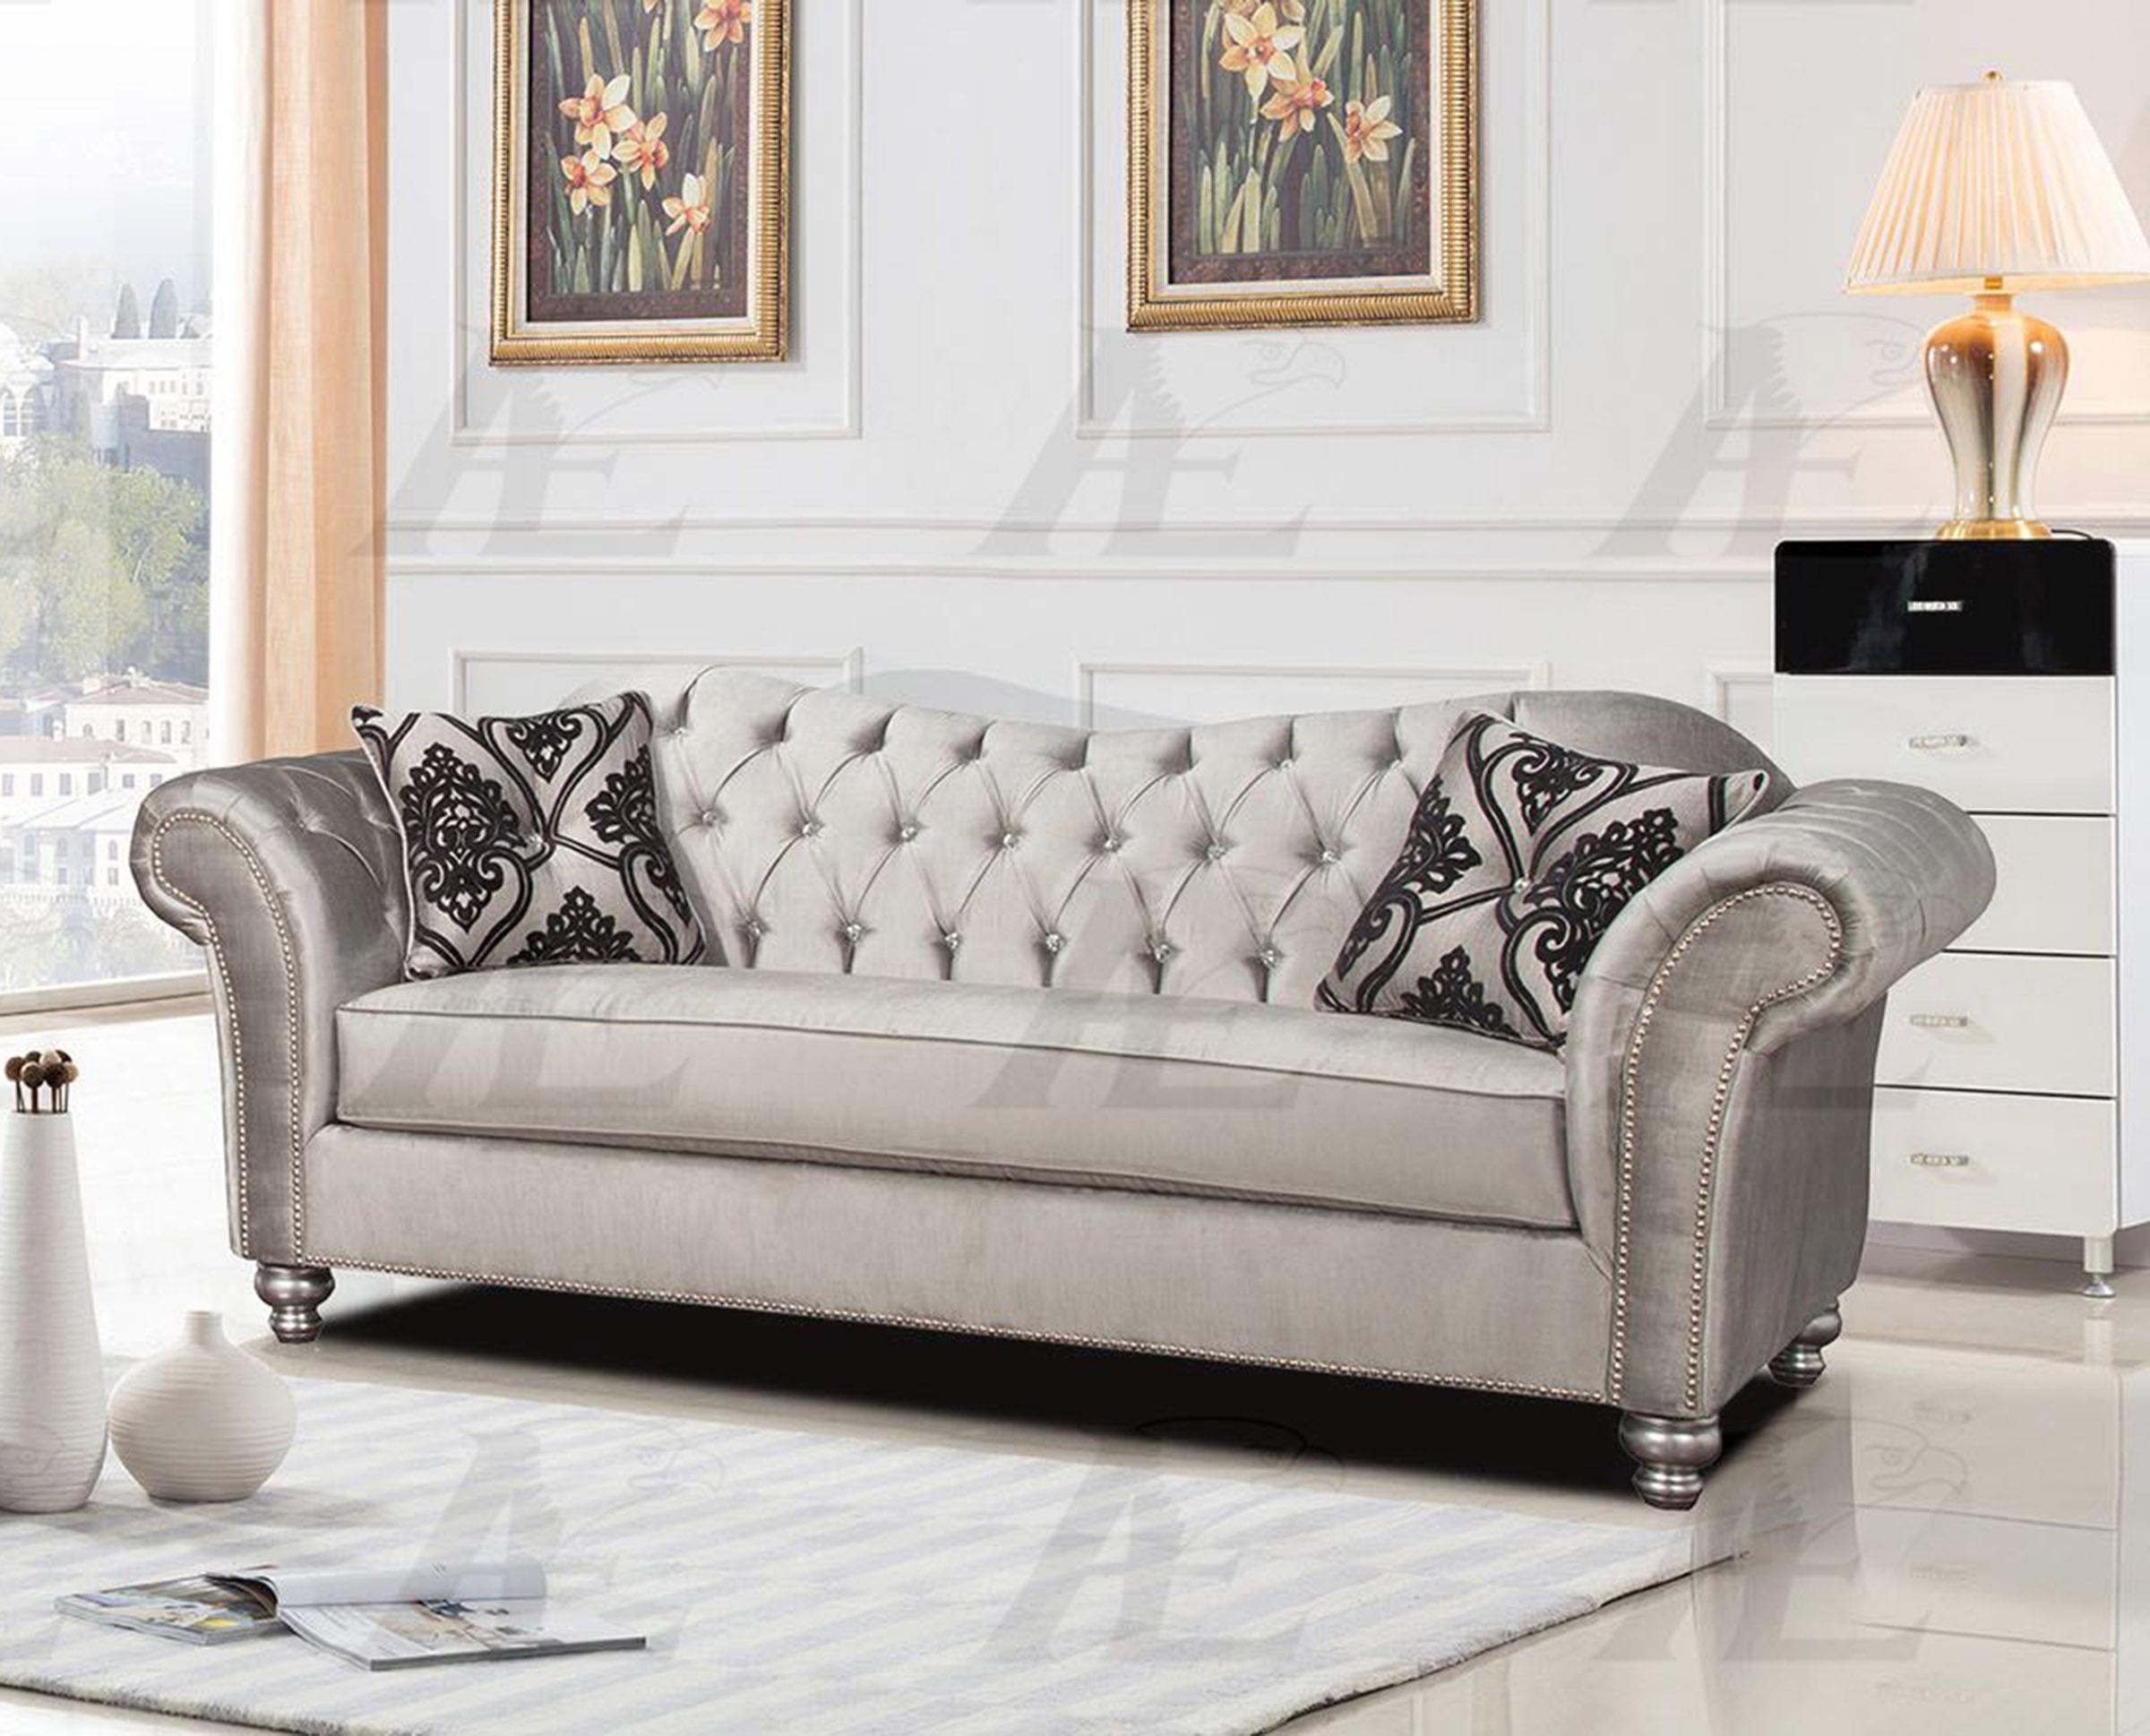 

    
American Eagle Furniture AE2600-S Sofa Silver AE2600-S-Sofa
